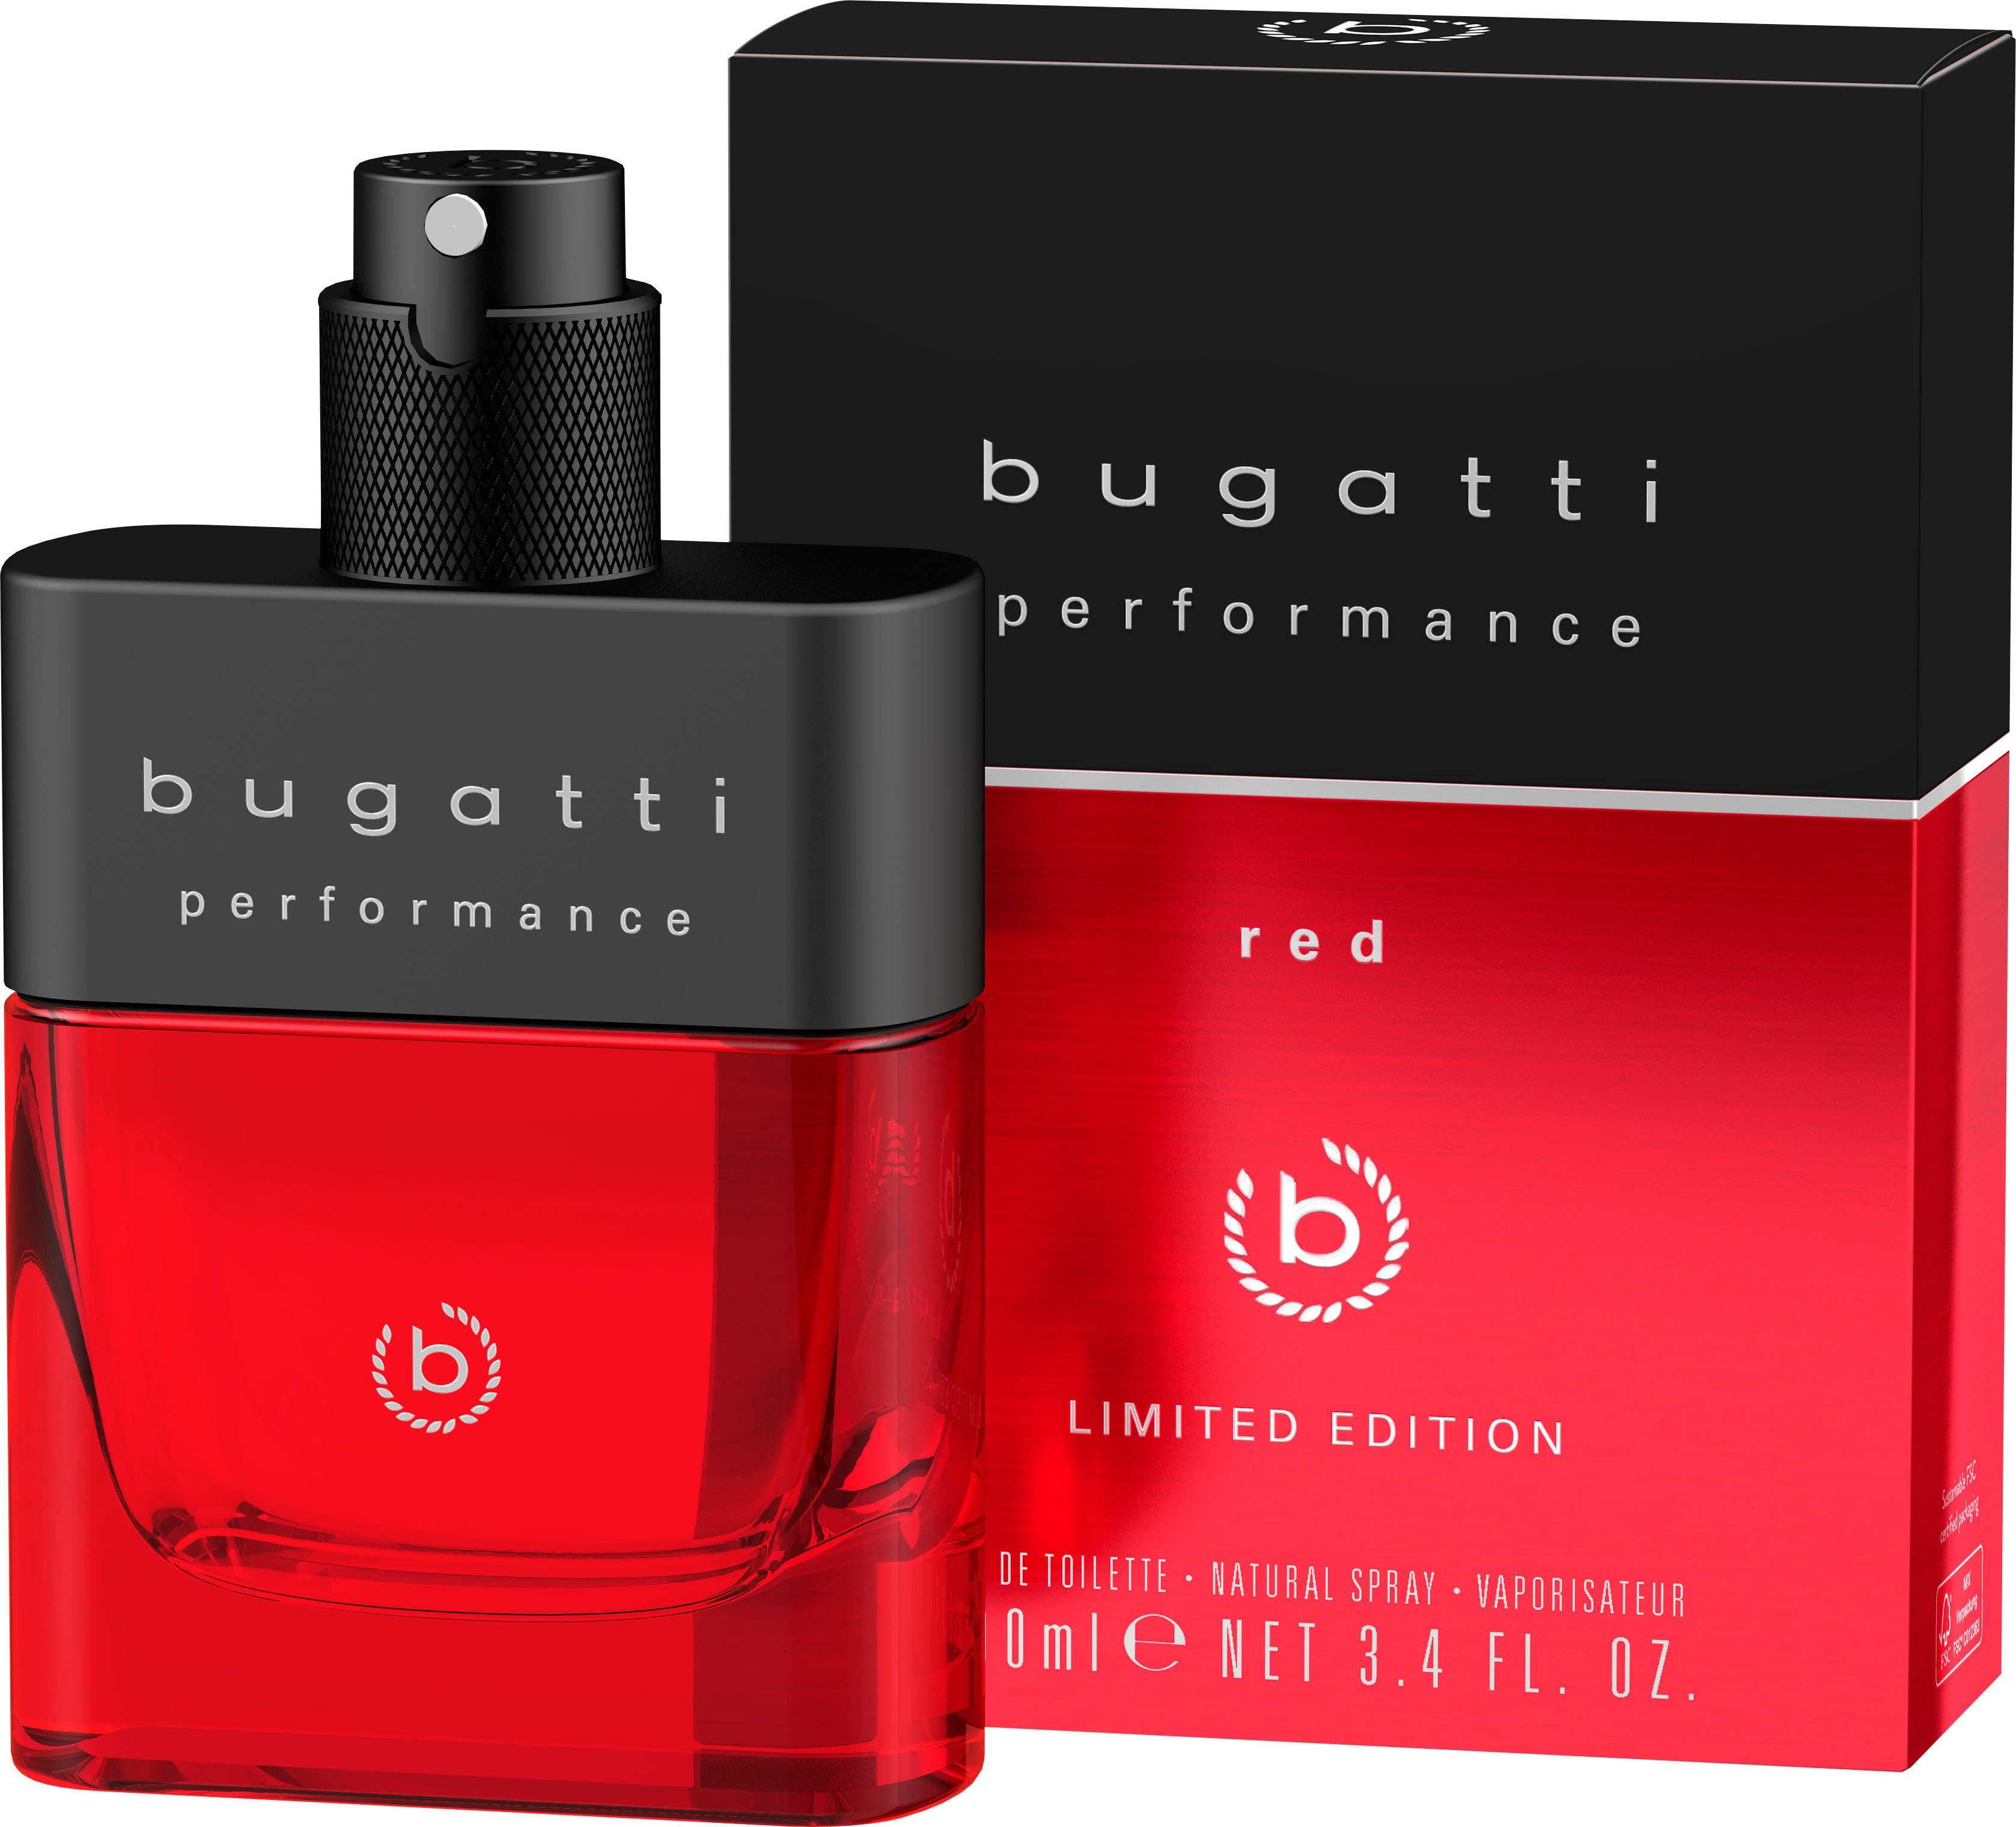 Red de Performance 100ml BUGATTI EdT Eau Edition Limited Toilette bugatti